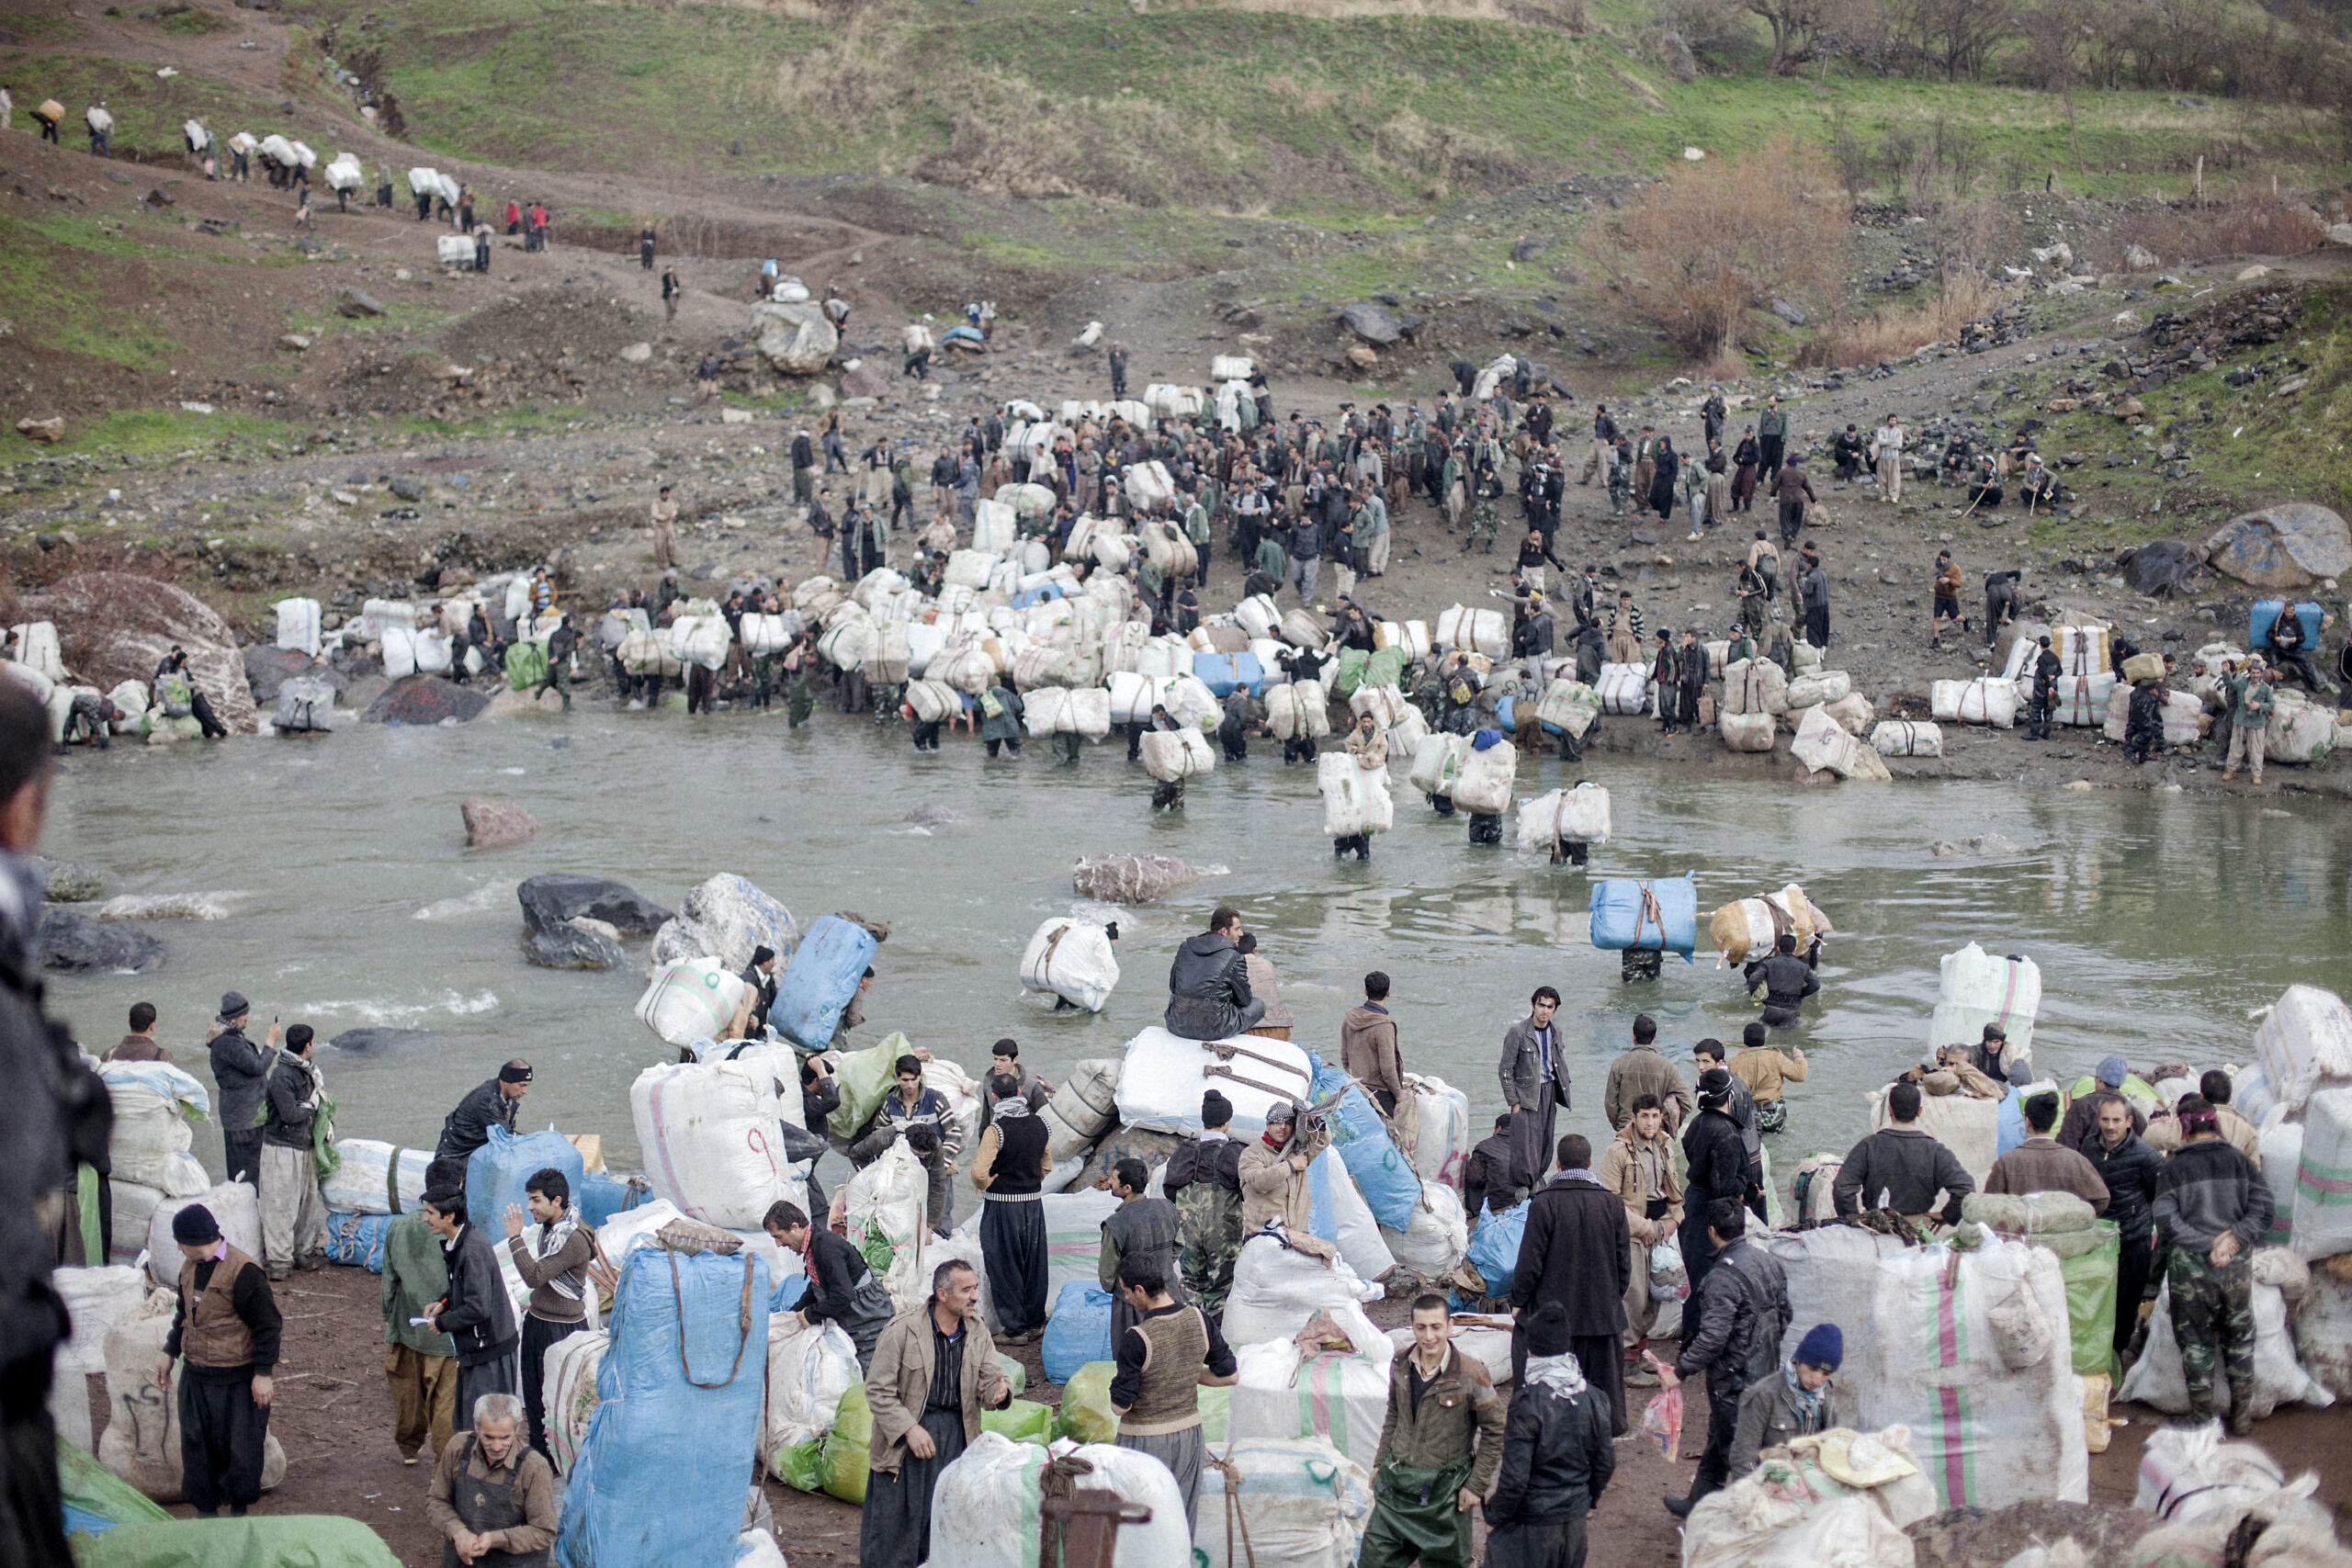 Pašeráci přechází přes řeku Šabaddin, která tvoří hranici mezi Irákem a Íránem. Íránští vojáci pašeráky sledují zpovzdálí poté, co dostali bakšiš, aby nedělali potíže. Šabaddin, irácký Kurdistán, íránsko-irácká hranice, prosinec 2014.